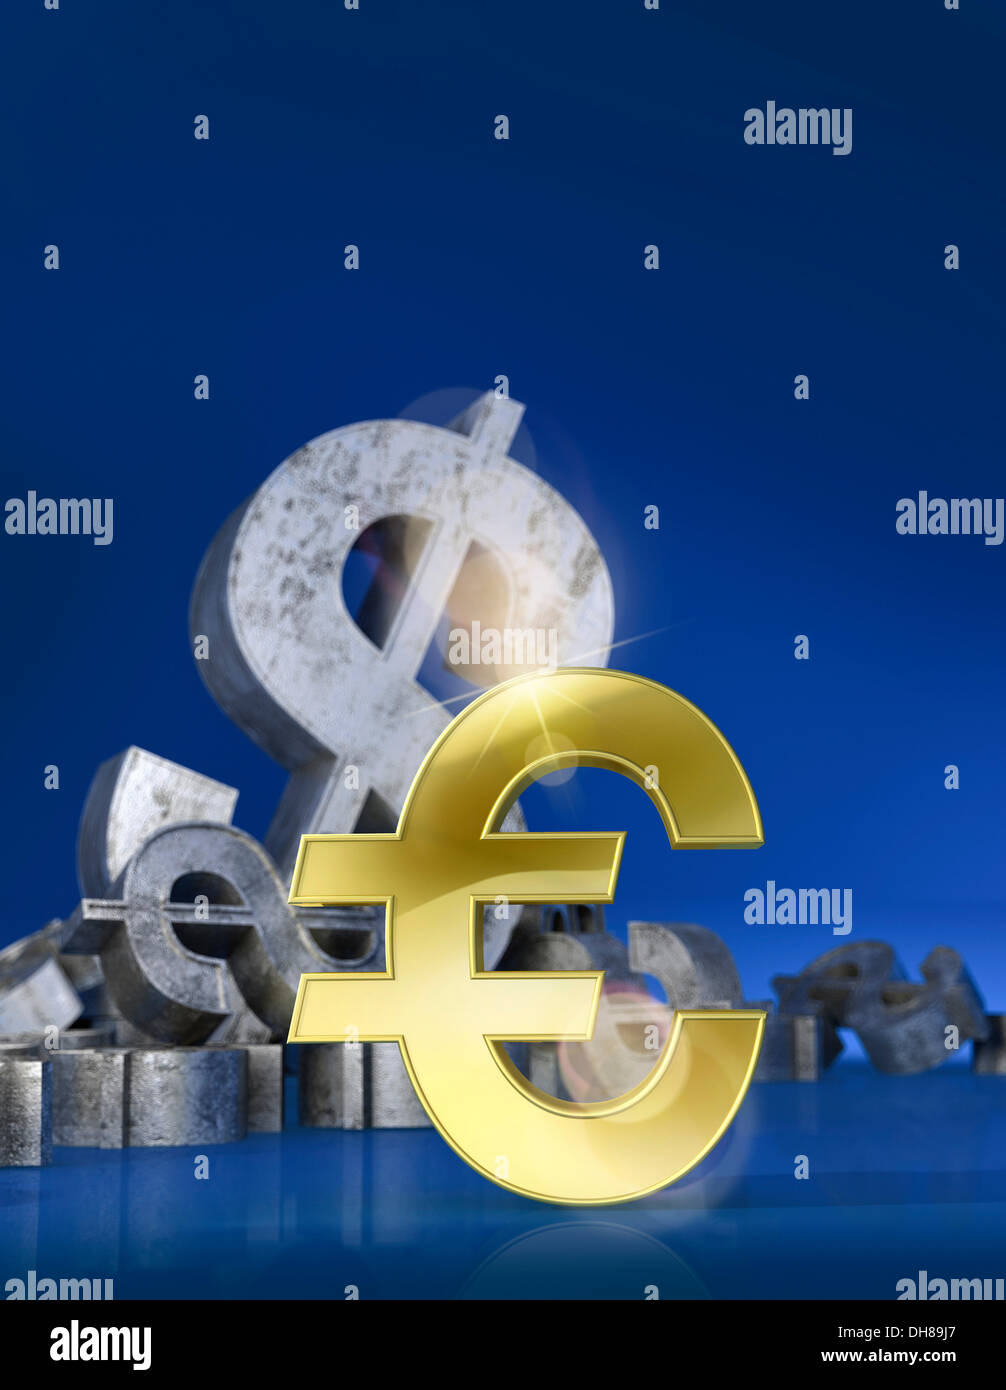 Simbolo dell'euro di fronte ad un simbolo di dollaro, immagine concettuale, immagini simboliche, rendering 3D, illustrazione Foto Stock